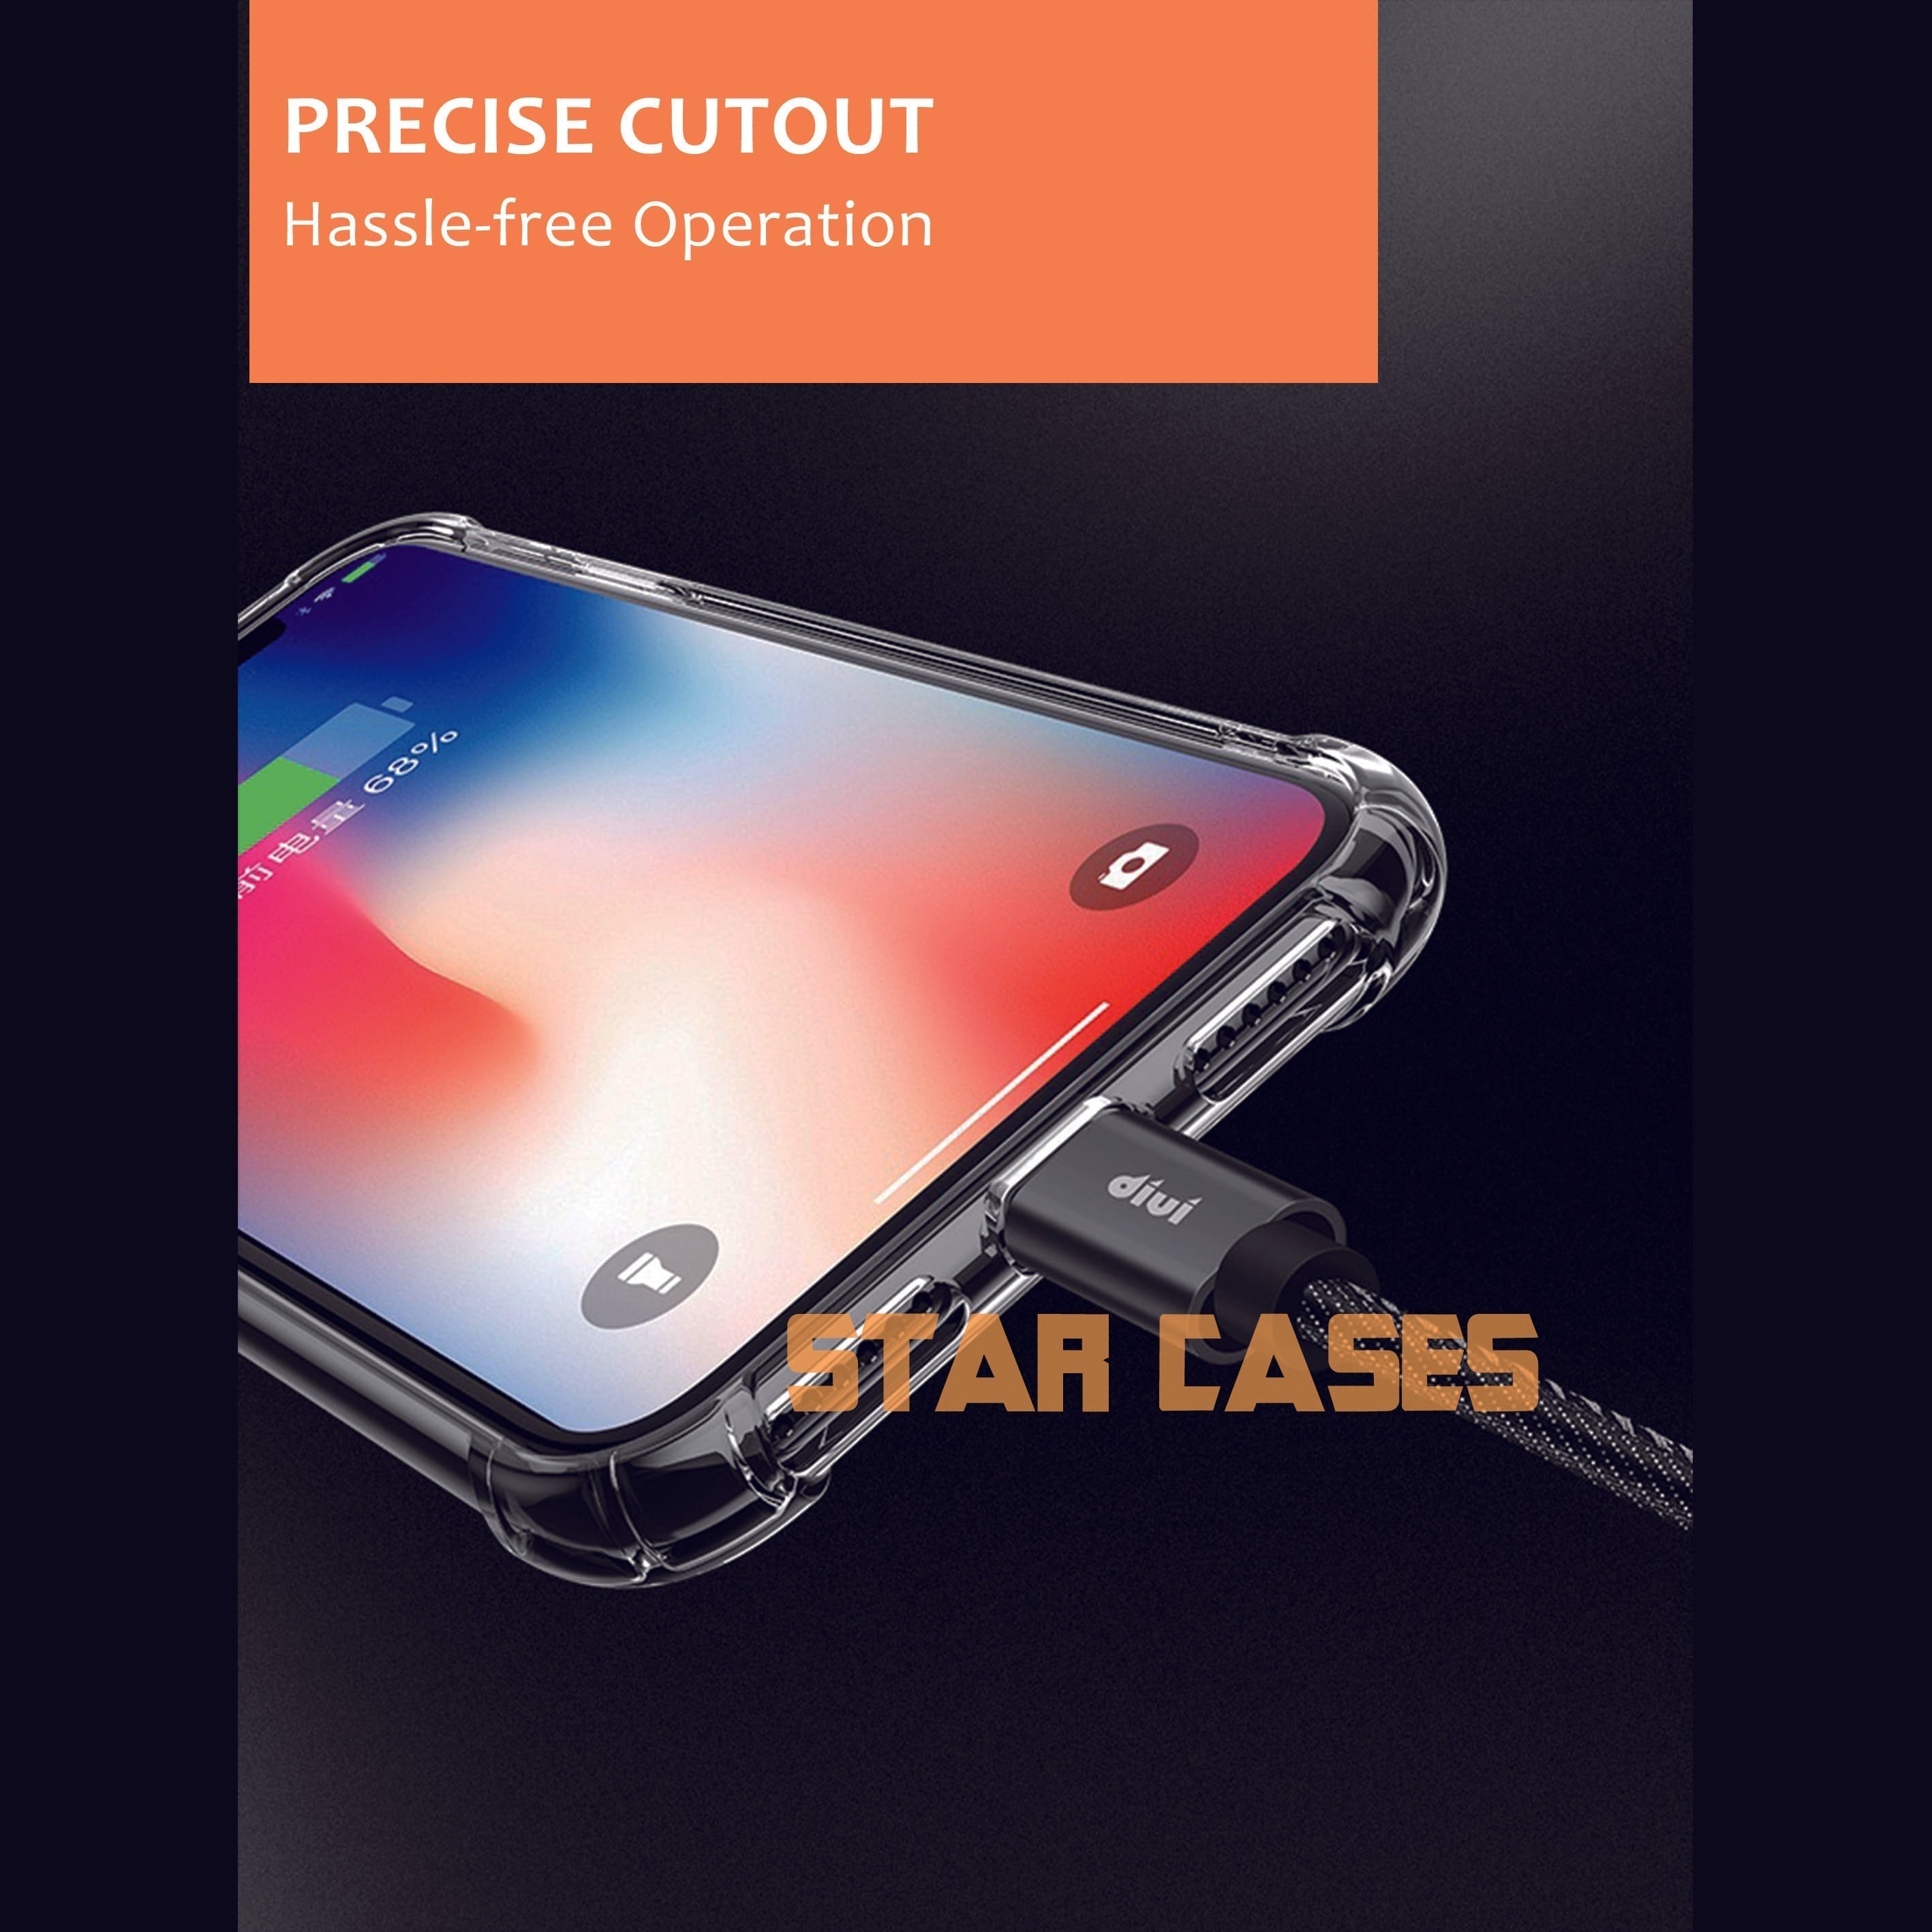 iPhone 11 ProMax Clear Soft Bumper Case